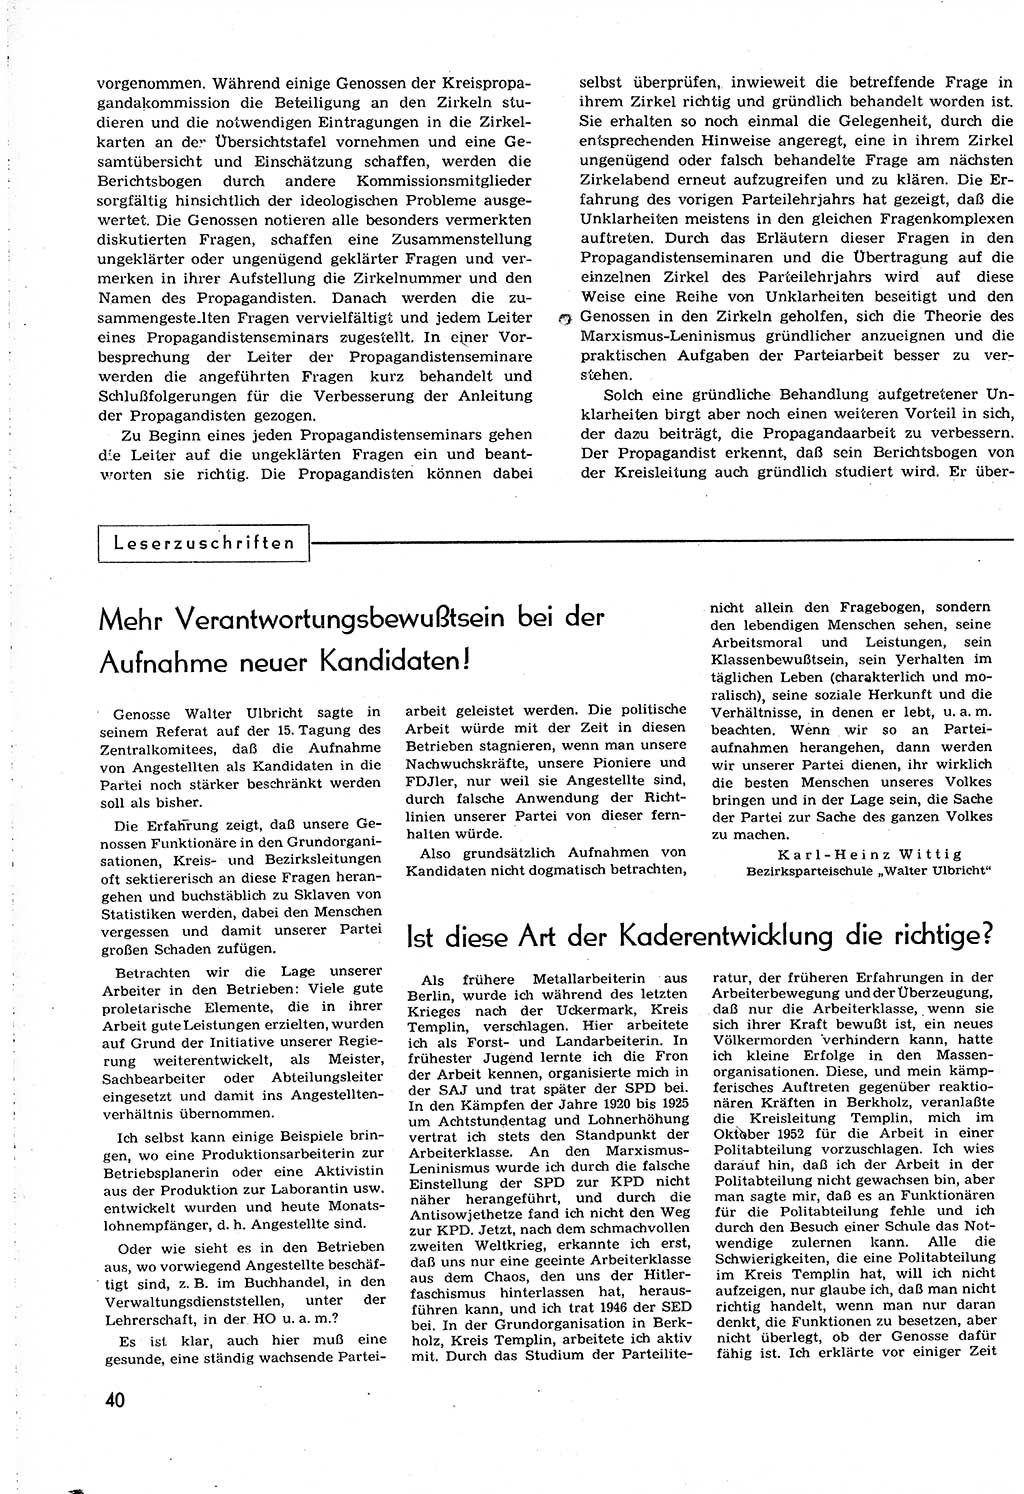 Neuer Weg (NW), Organ des Zentralkomitees (ZK) [Sozialistische Einheitspartei Deutschlands (SED)] für alle Parteiarbeiter, 8. Jahrgang [Deutsche Demokratische Republik (DDR)] 1953, Heft 19/40 (NW ZK SED DDR 1953, H. 19/40)